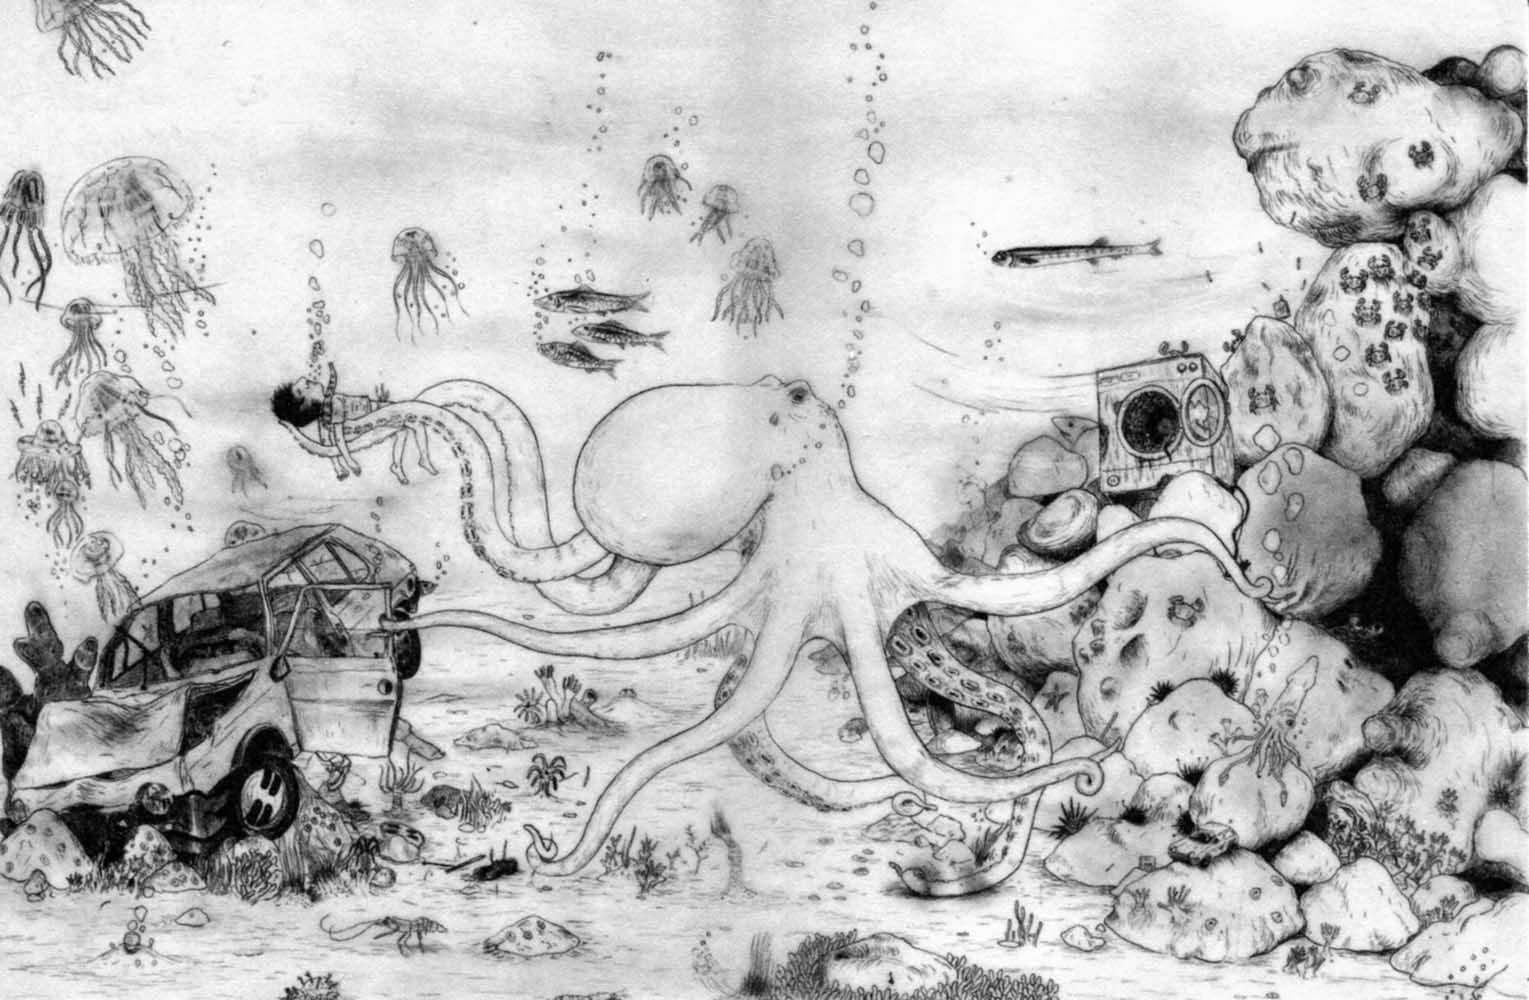 Edo Chieregato e Michelangelo Setola, "Dormire nel fango", seconda di copertina e risvolto